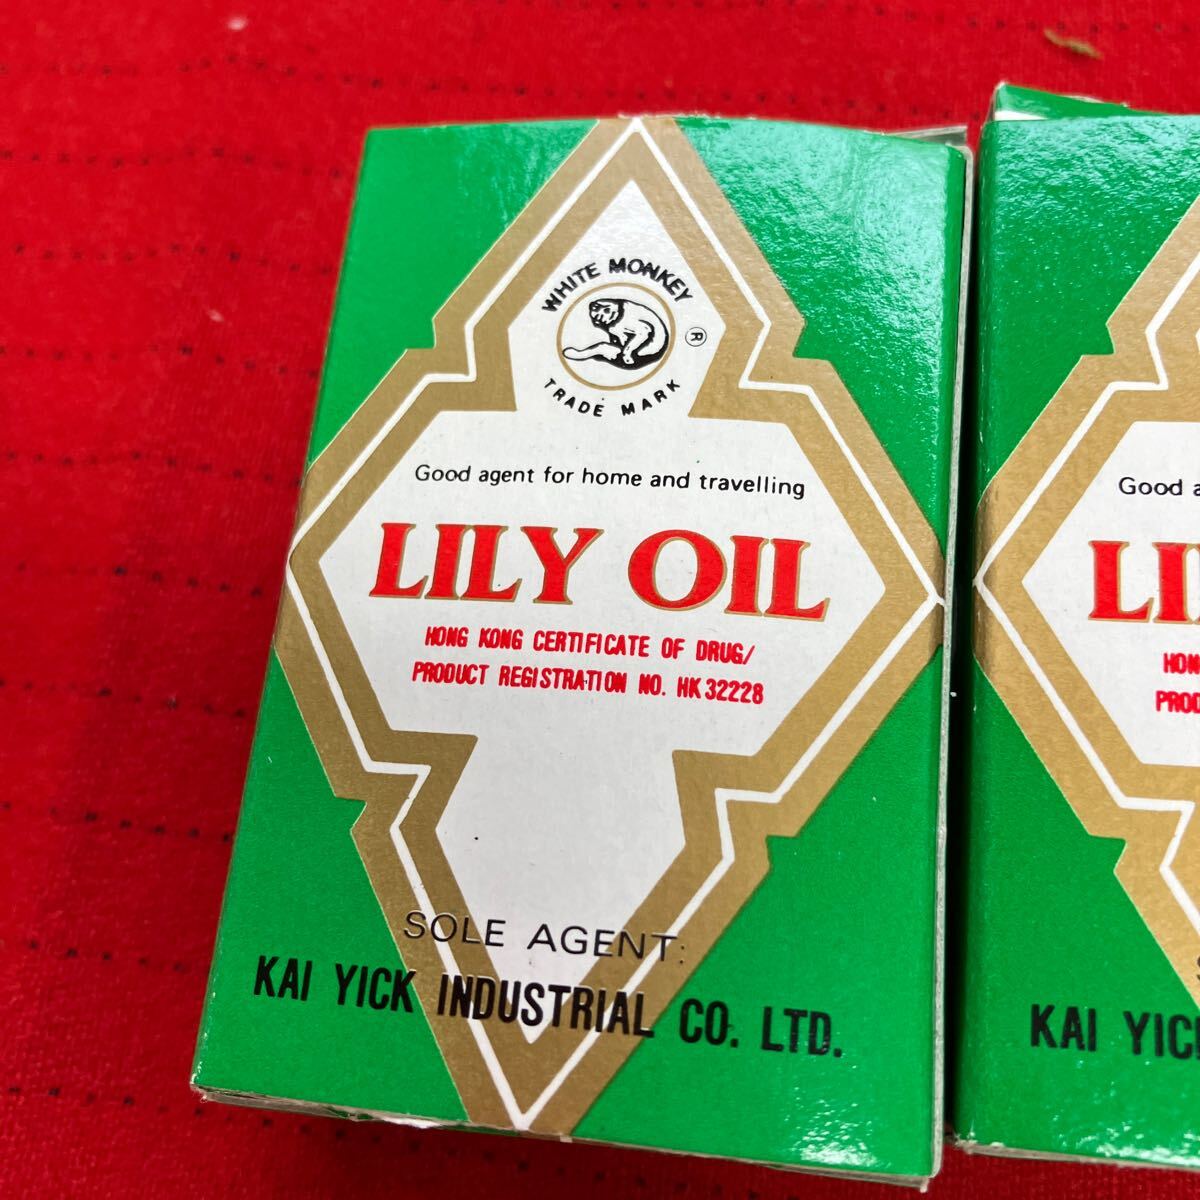 [ 100 . масло обезболивающее LILY OIL①]3 шт. комплект универсальный лекарство Hong Kong производства [B8-3③]0404